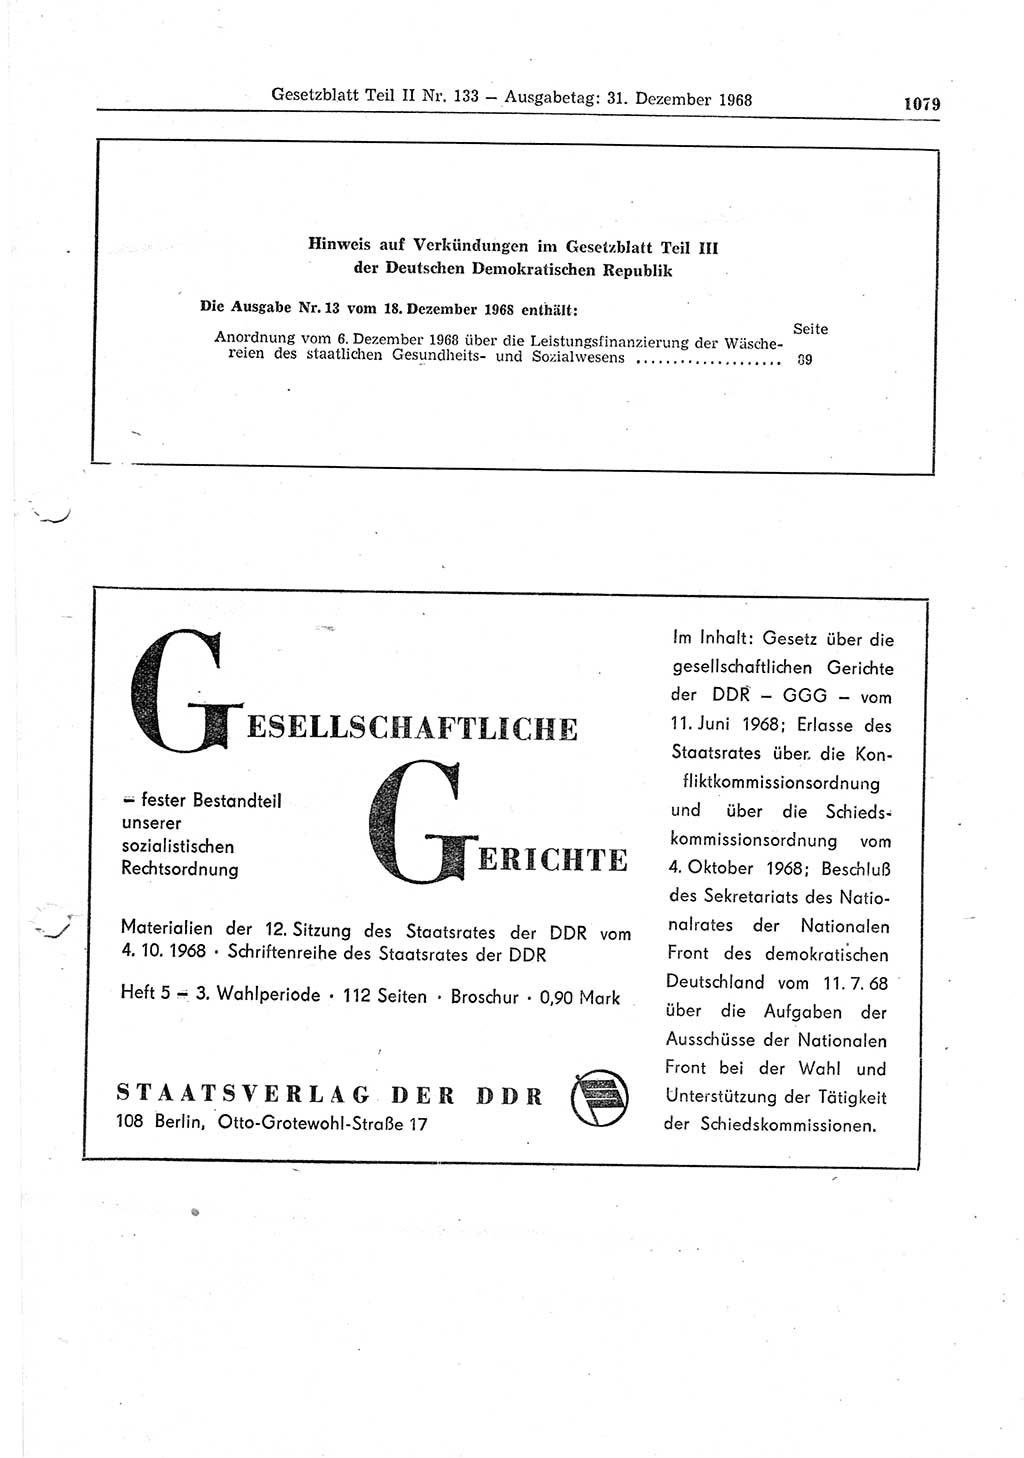 Gesetzblatt (GBl.) der Deutschen Demokratischen Republik (DDR) Teil ⅠⅠ 1968, Seite 1079 (GBl. DDR ⅠⅠ 1968, S. 1079)